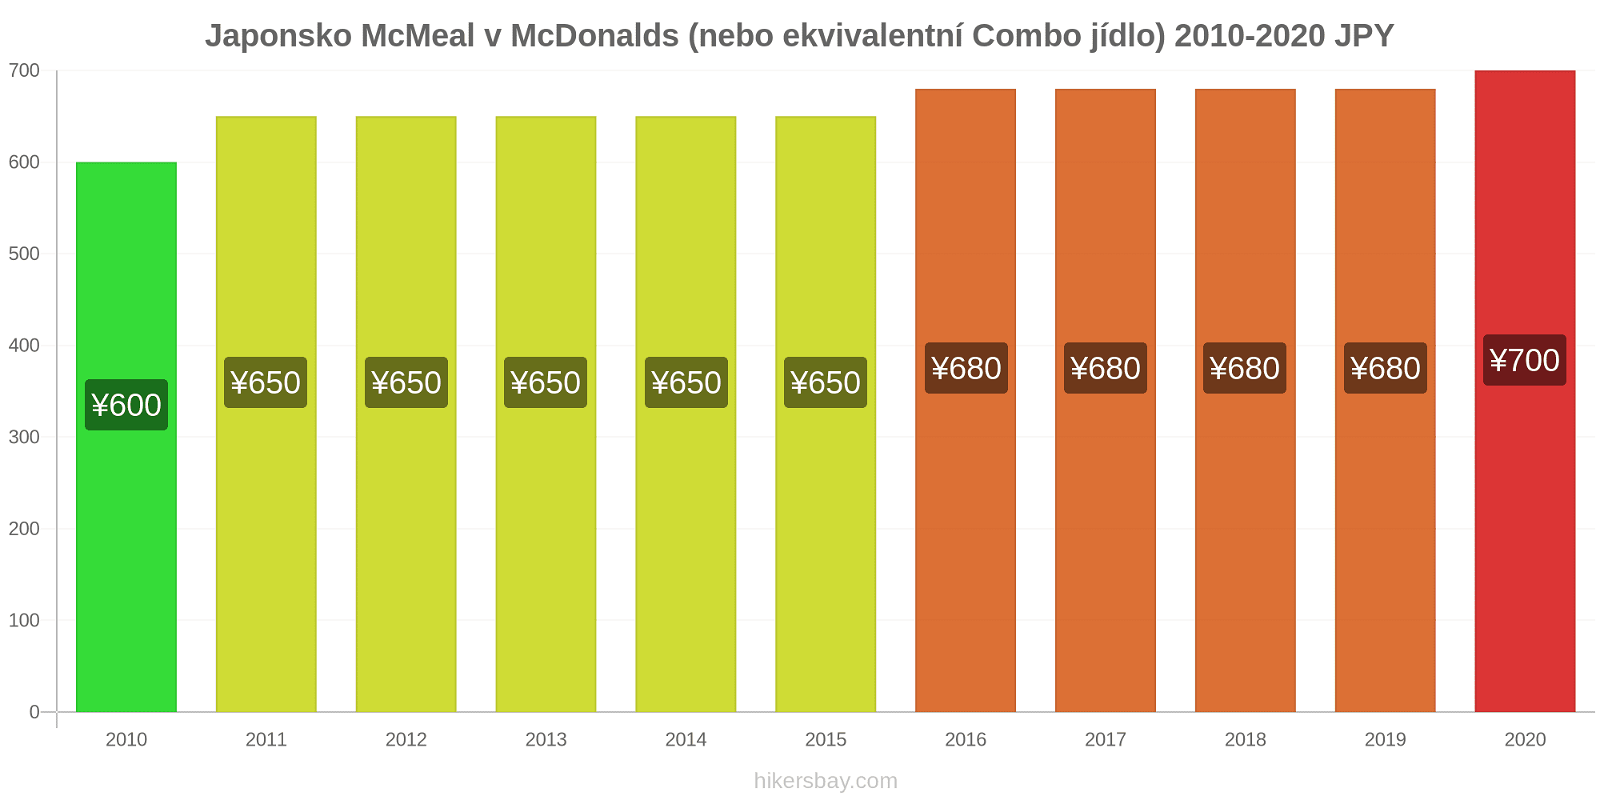 Japonsko změny cen McMeal v McDonalds (nebo ekvivalentní Combo jídlo) hikersbay.com